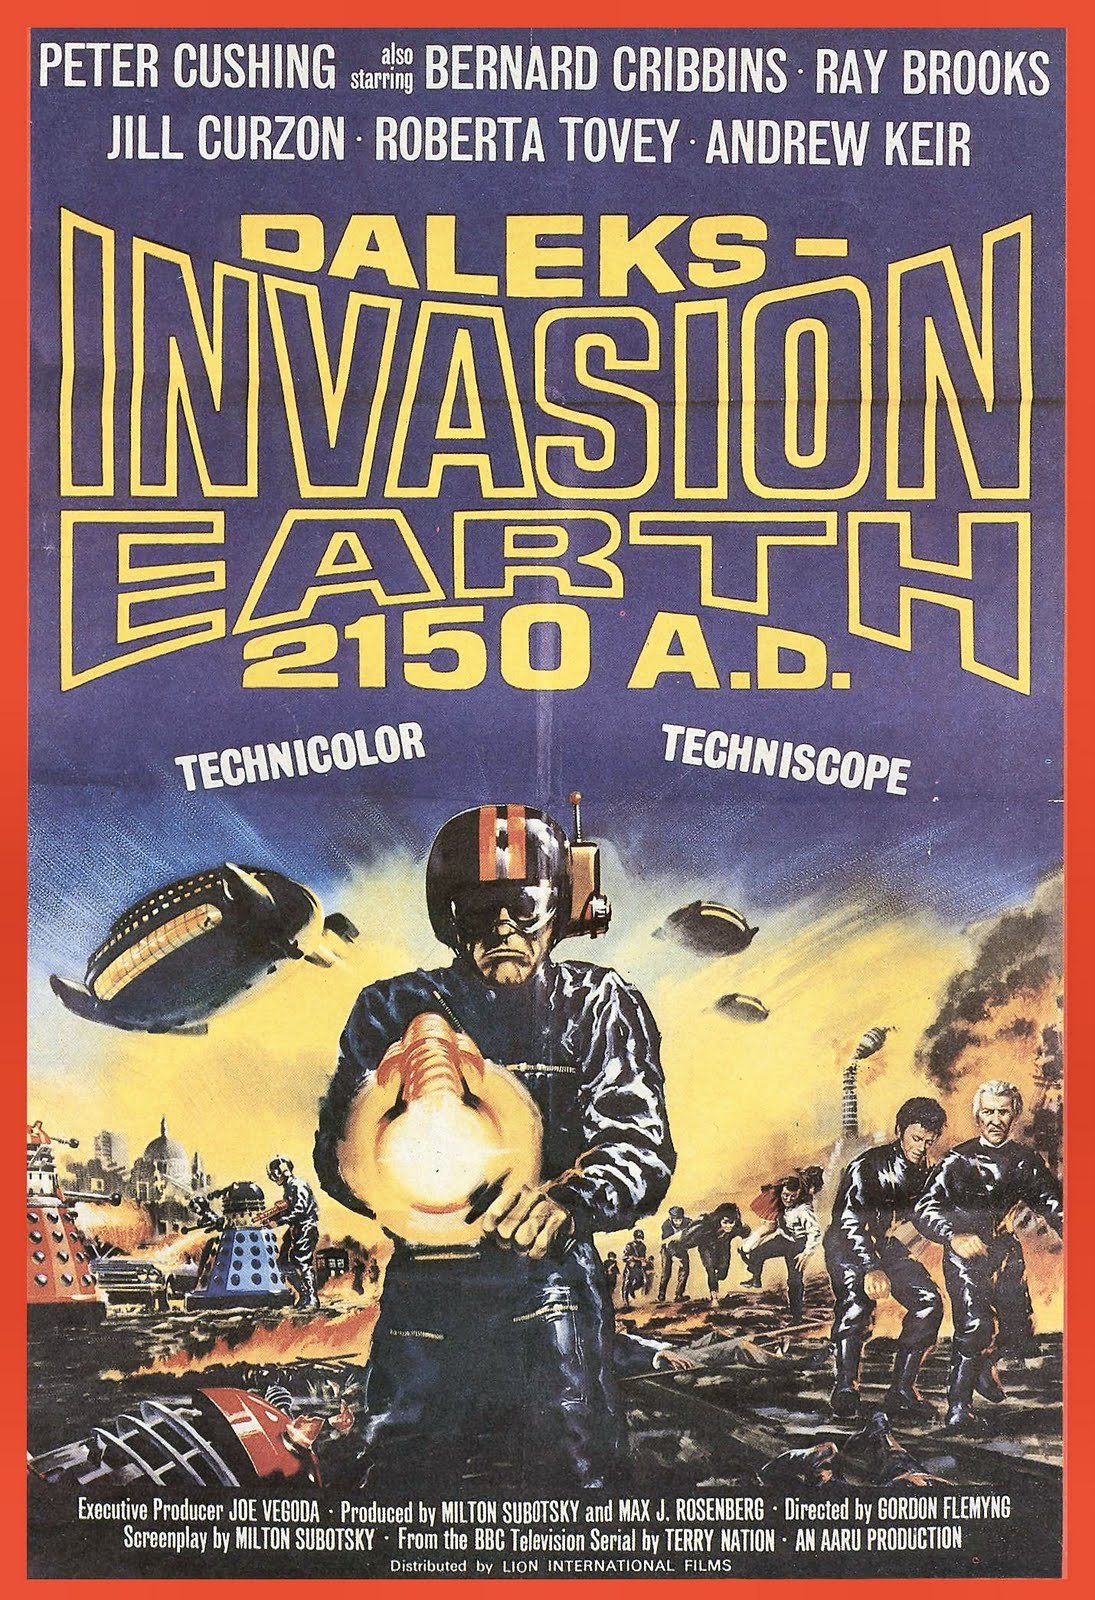 L'affiche du film Daleks' Invasion Earth: 2150 A.D.